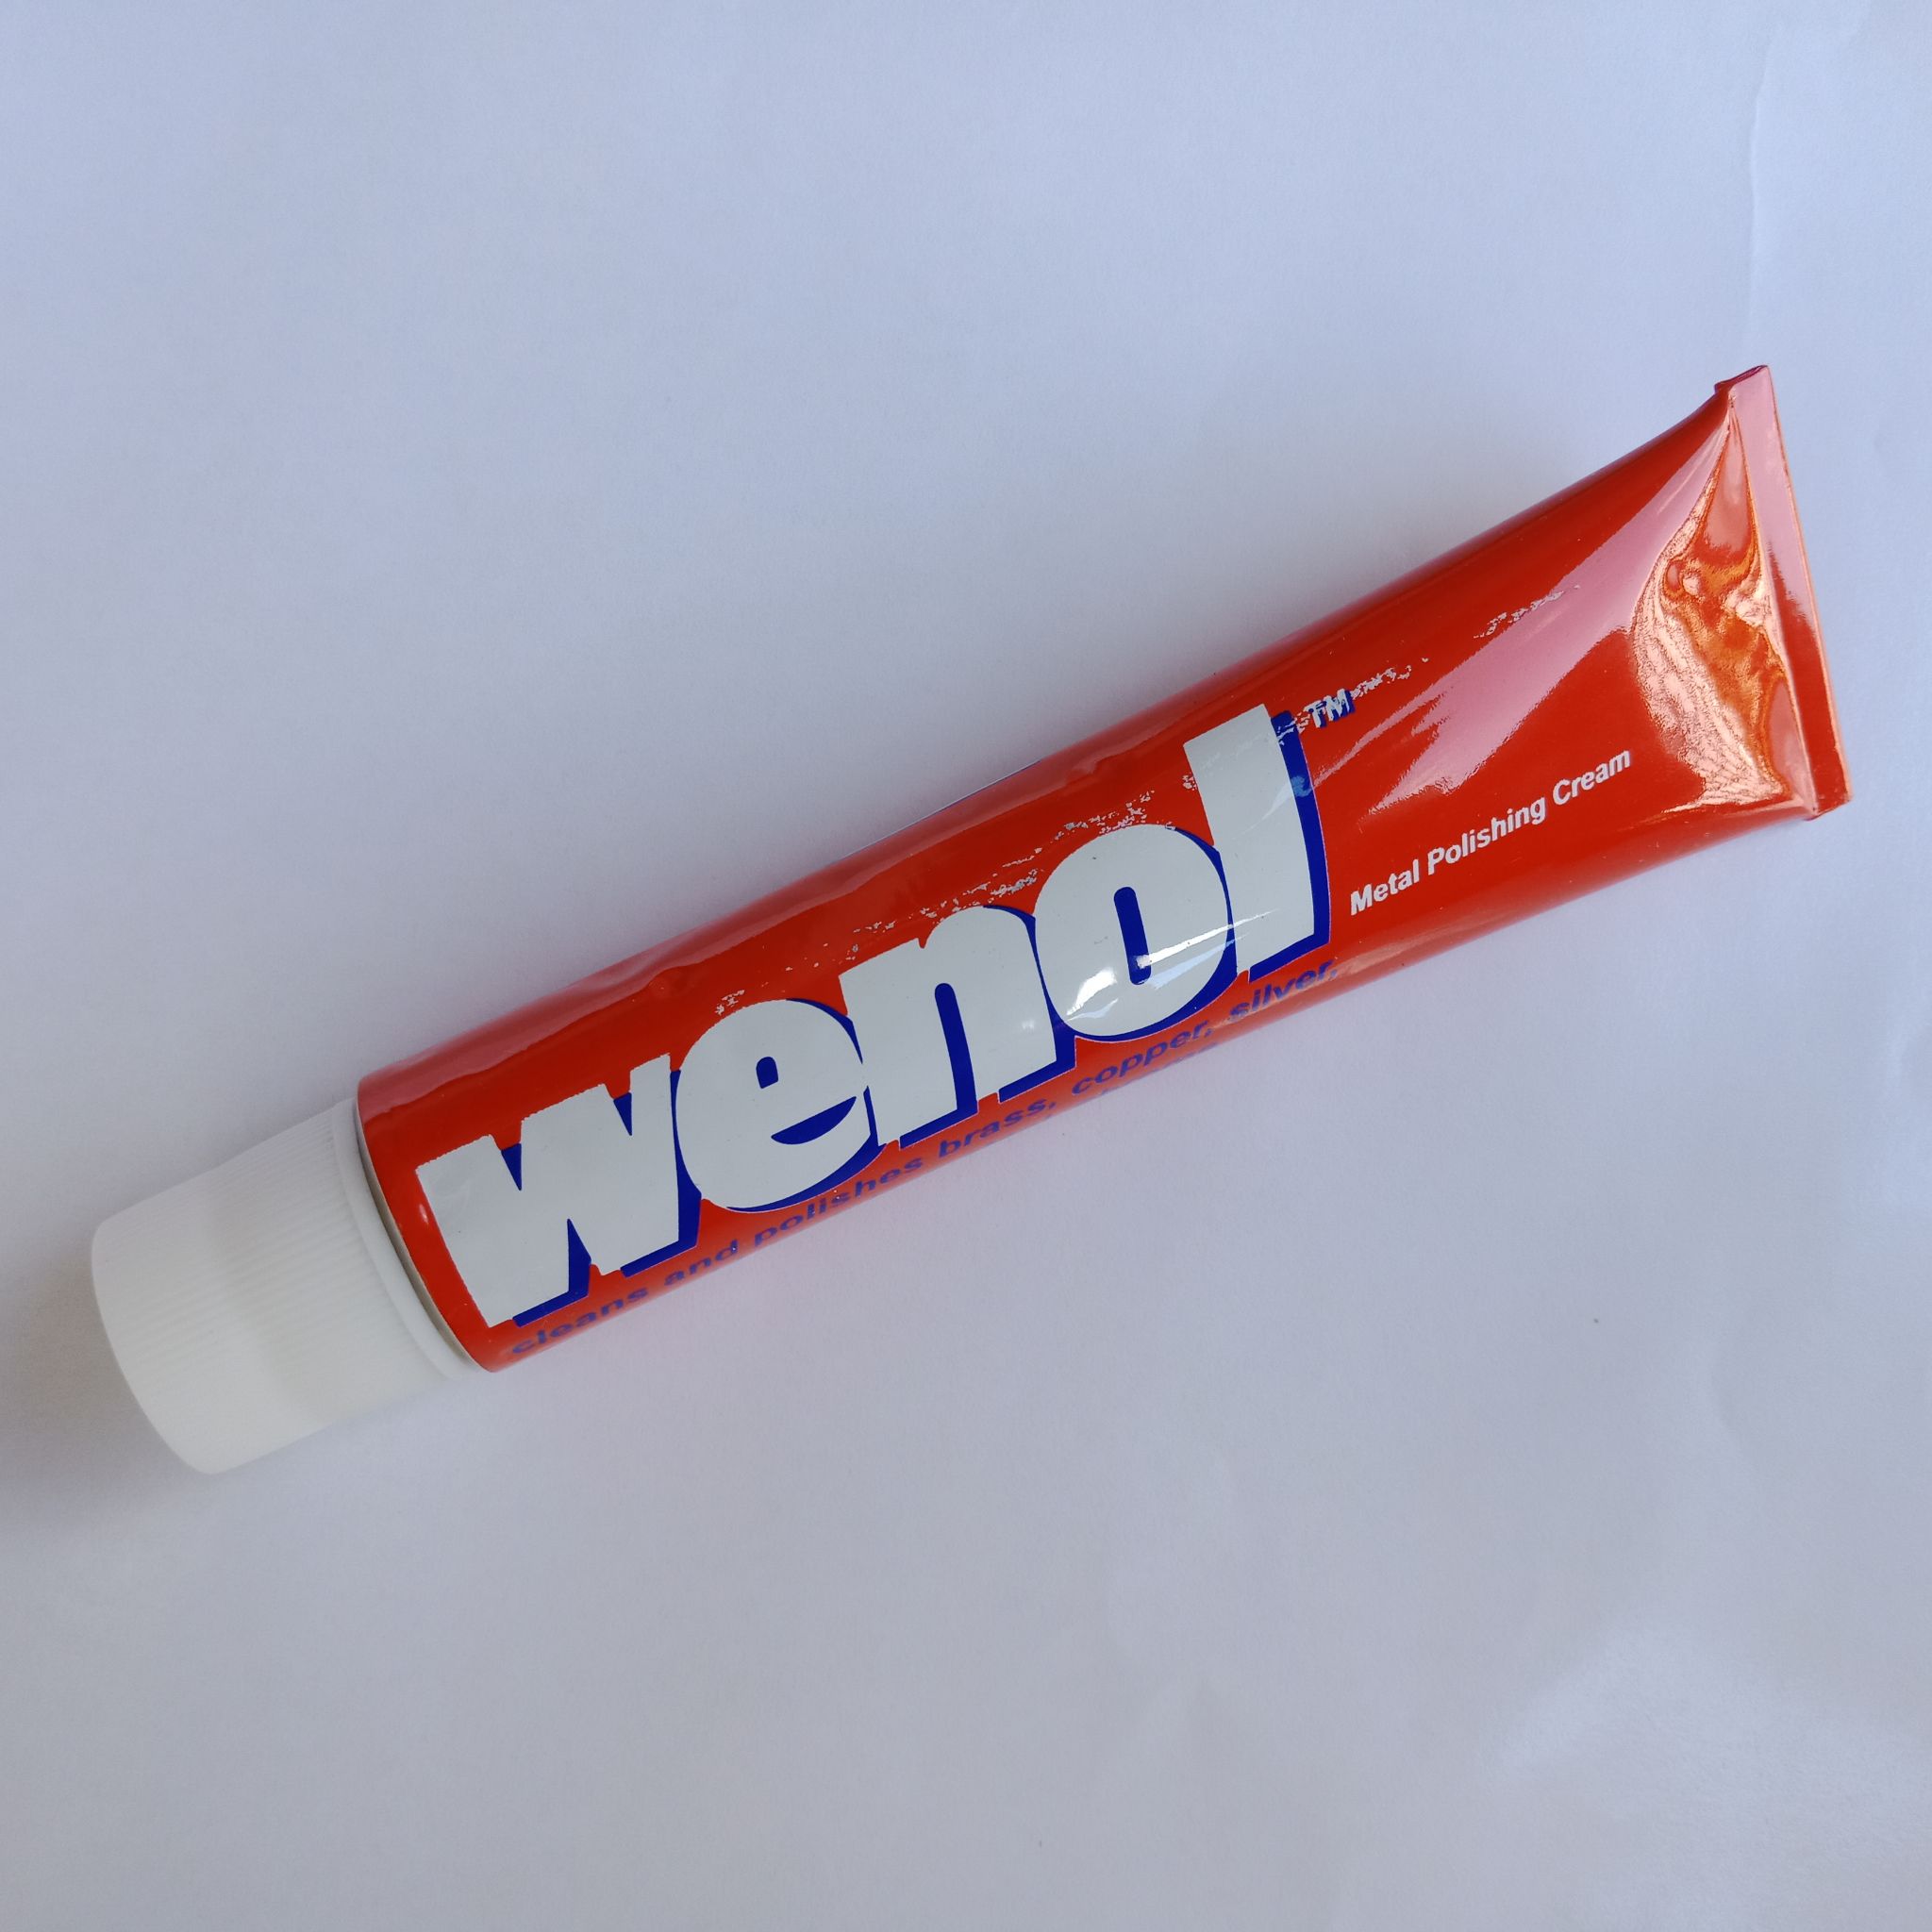 Wenol Metal Polish 1000 ml. by Wenol